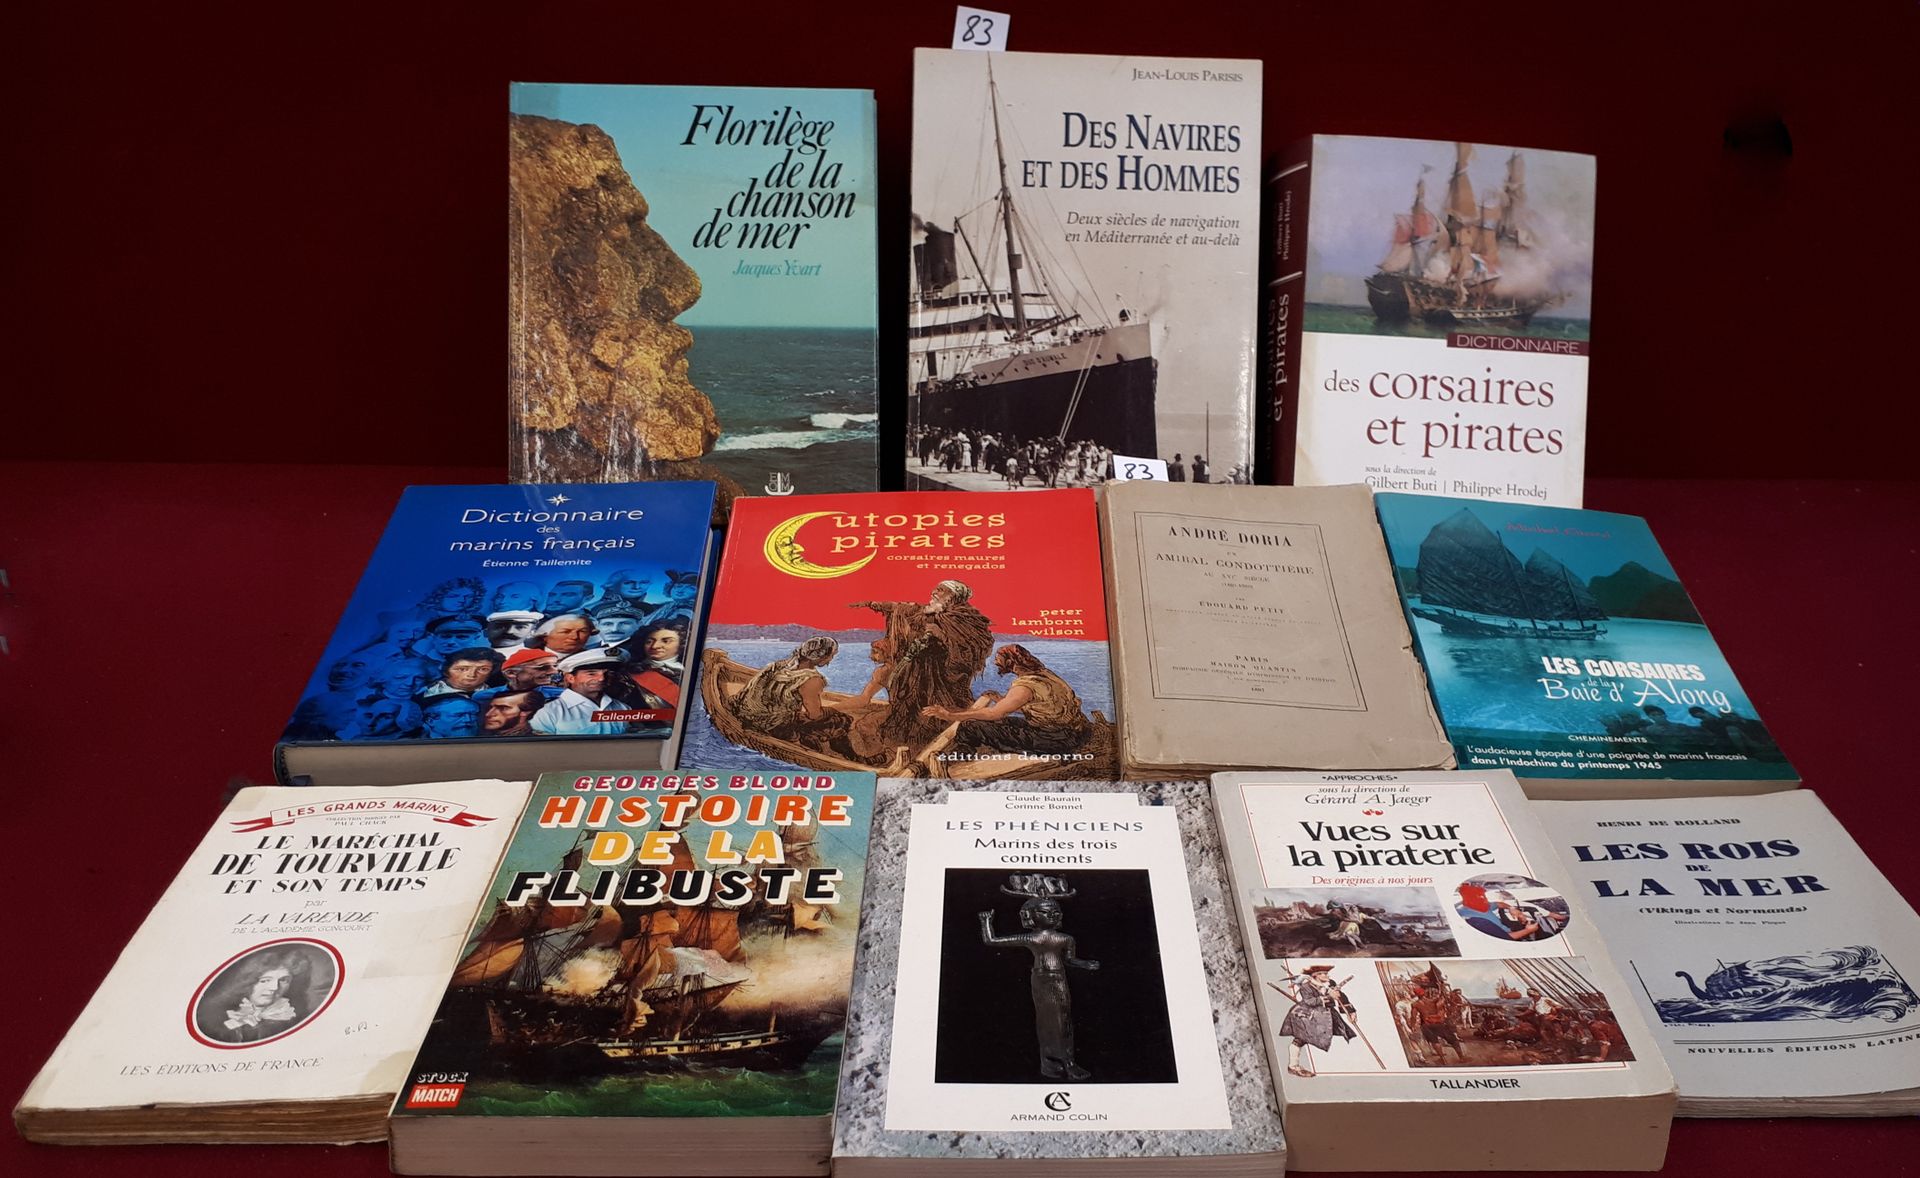 La Mer, les Pirates 12本关于海盗和水手的书籍，包括：16世纪的海军上将Condottier。